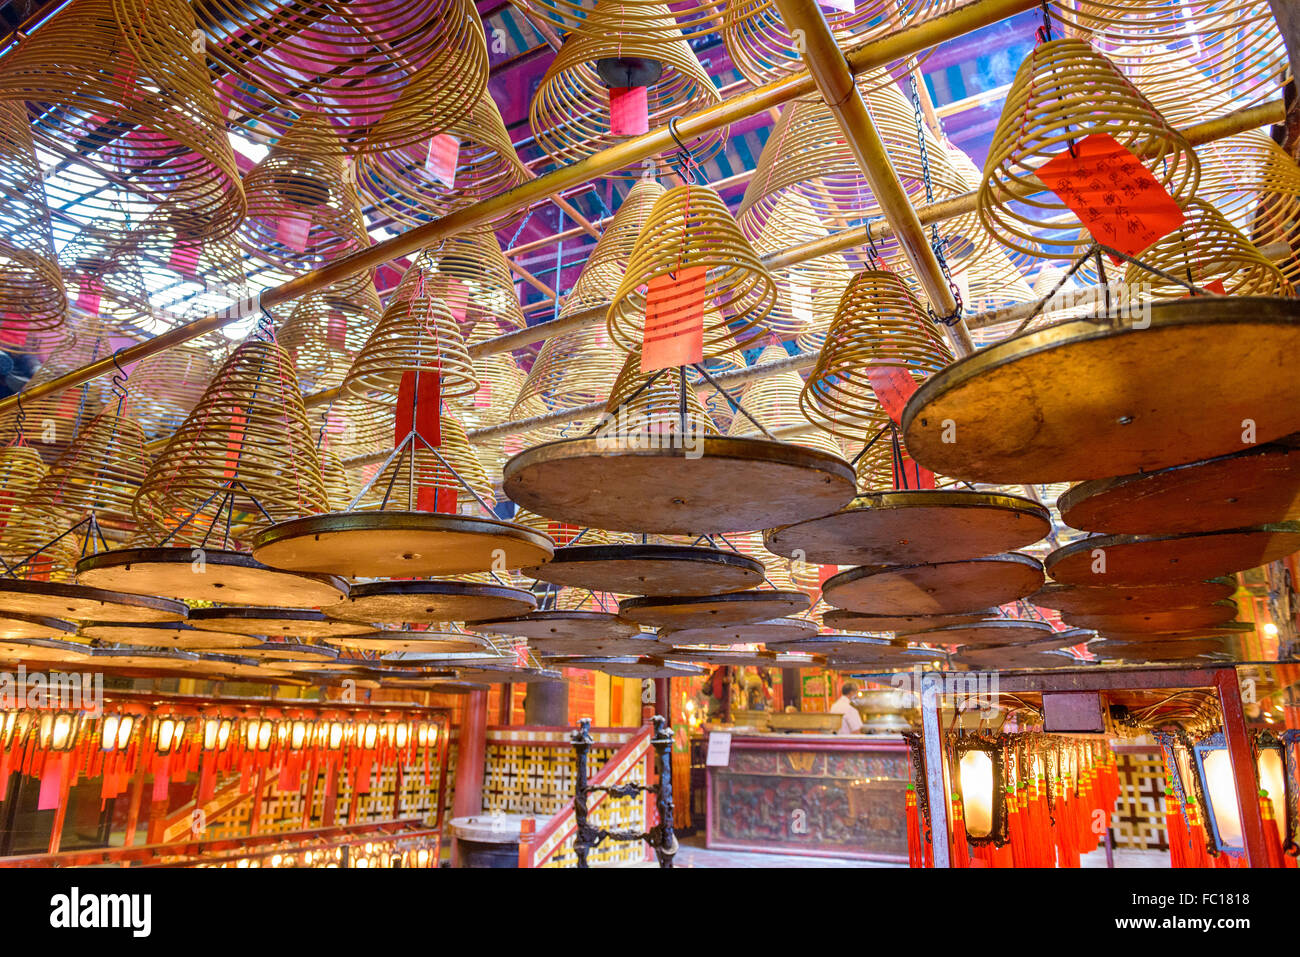 The interior of Man Mo Temple in Hong Kong, China. Stock Photo